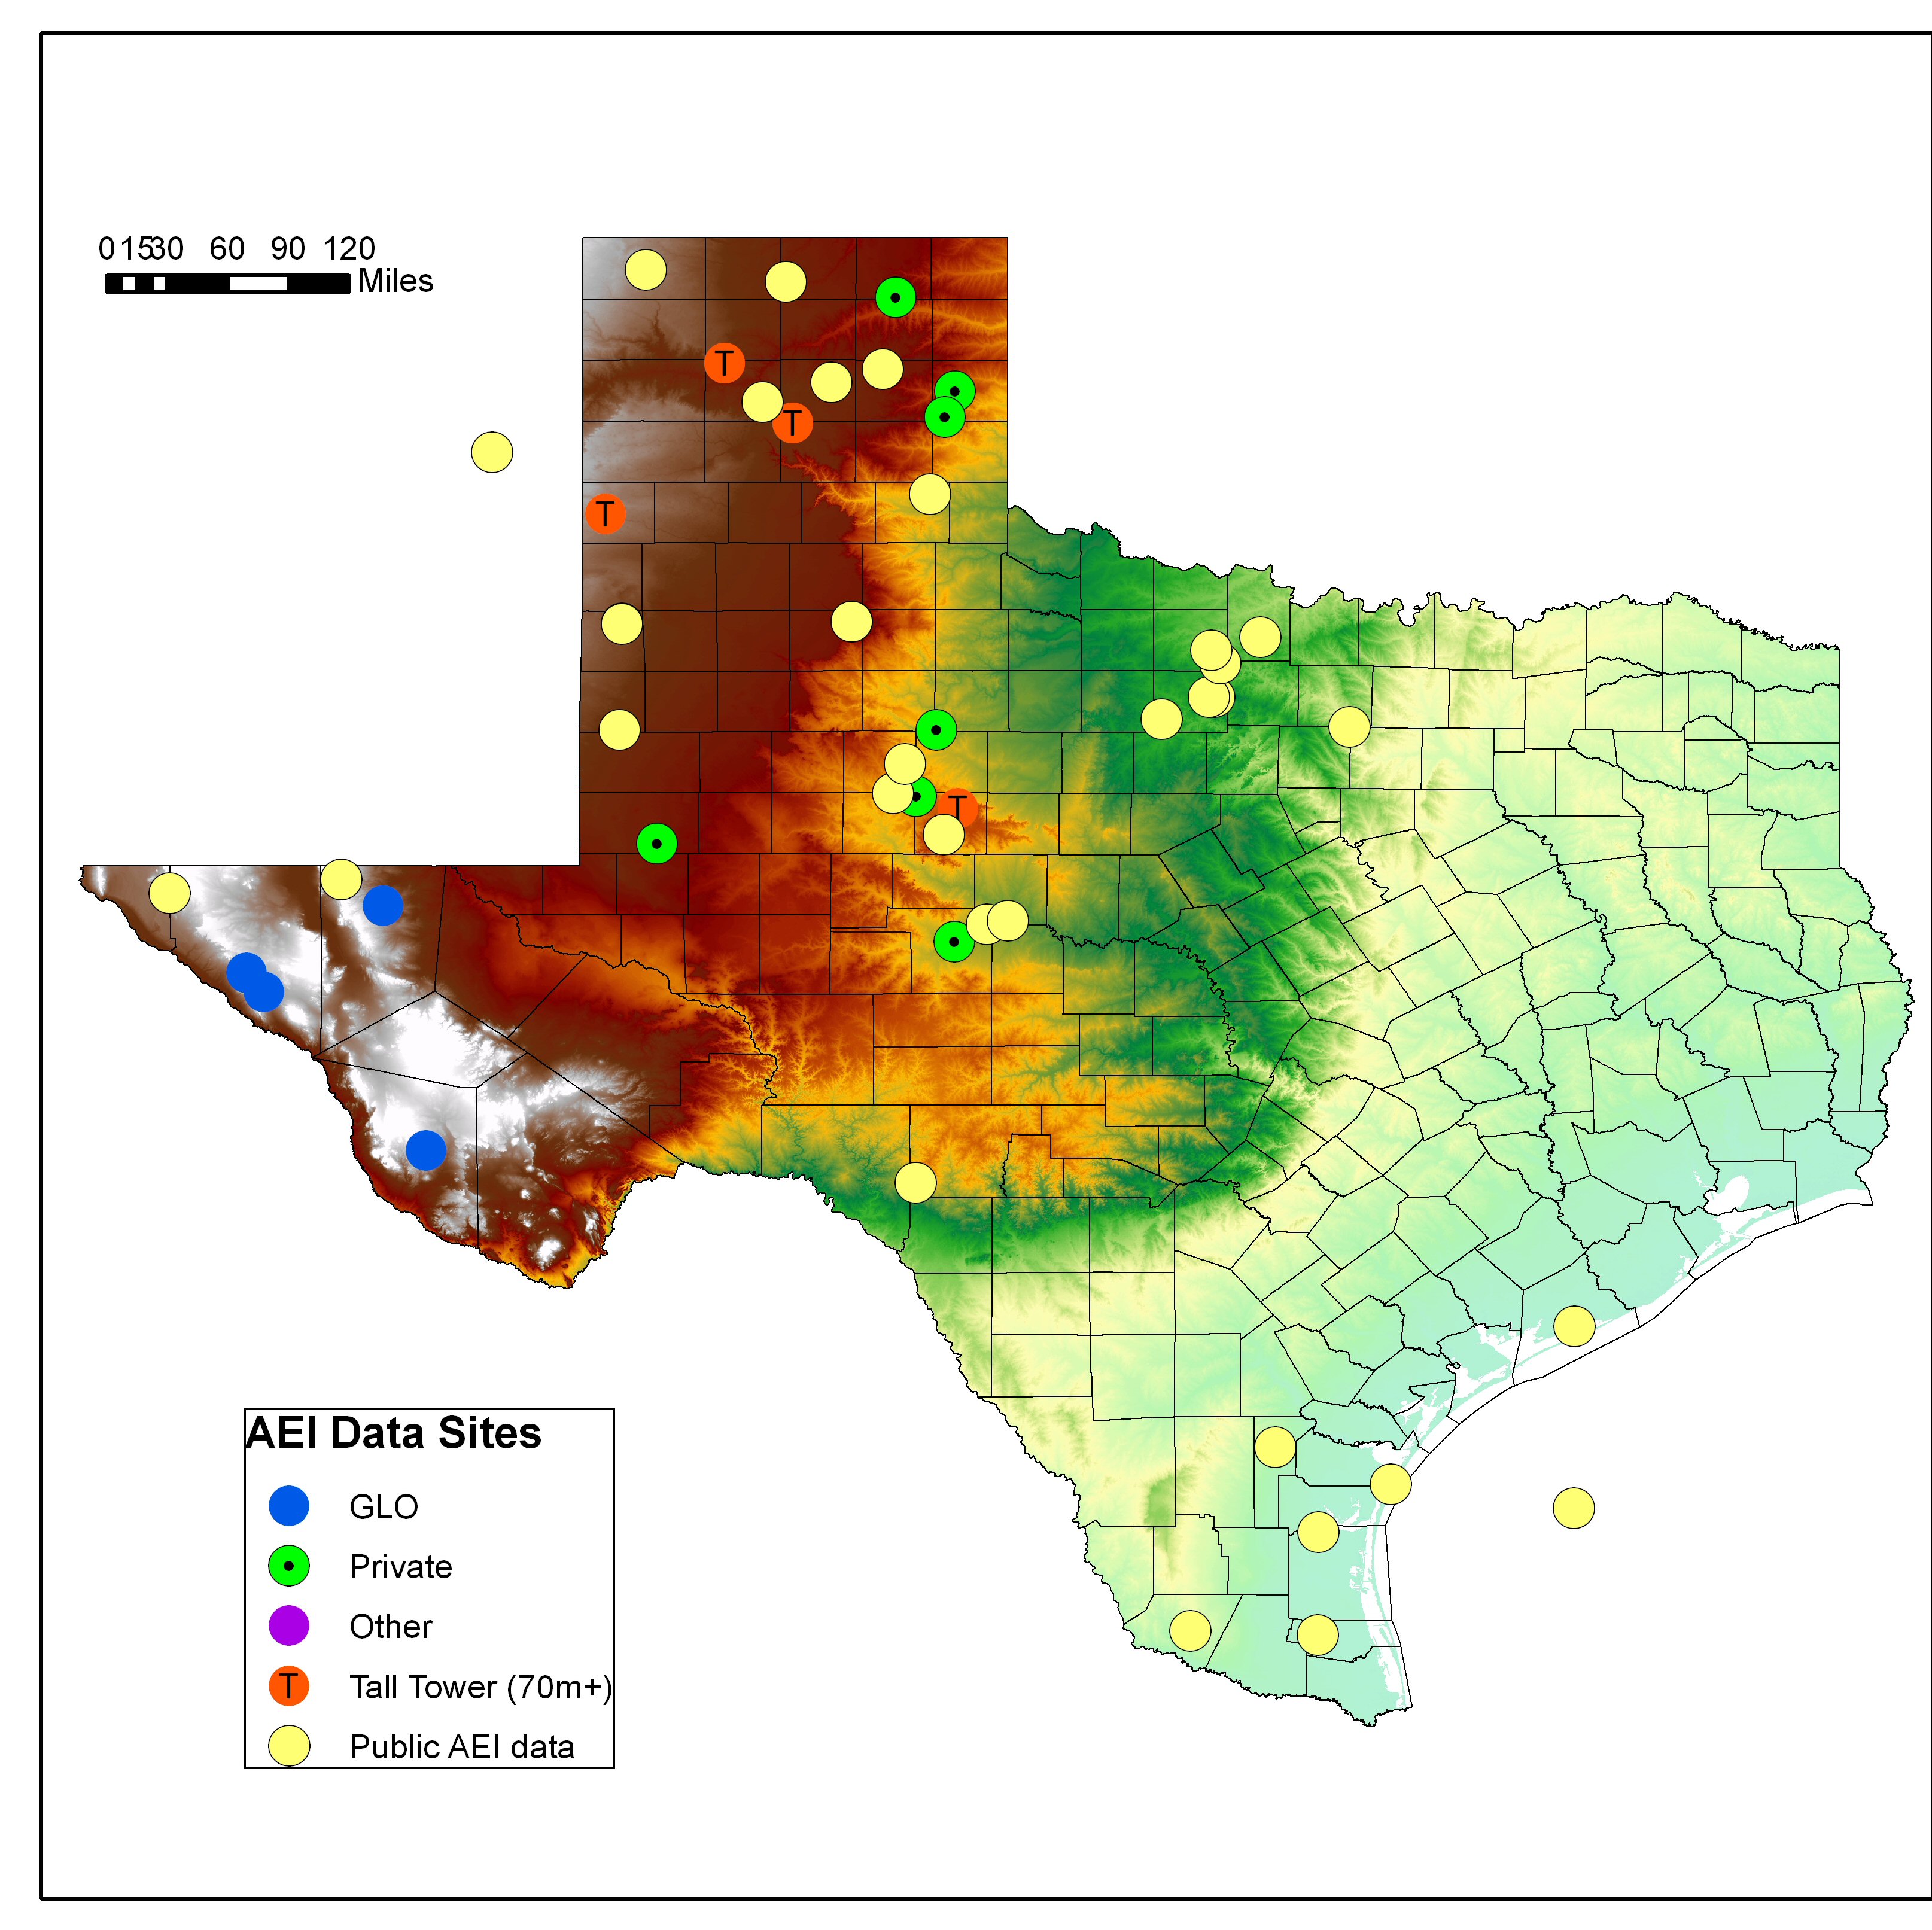 Eólica y energías renovables en EE UU: Texas construirá el mayor parque eólico del muncon con 1,1 GW y 650 aerogeneradores